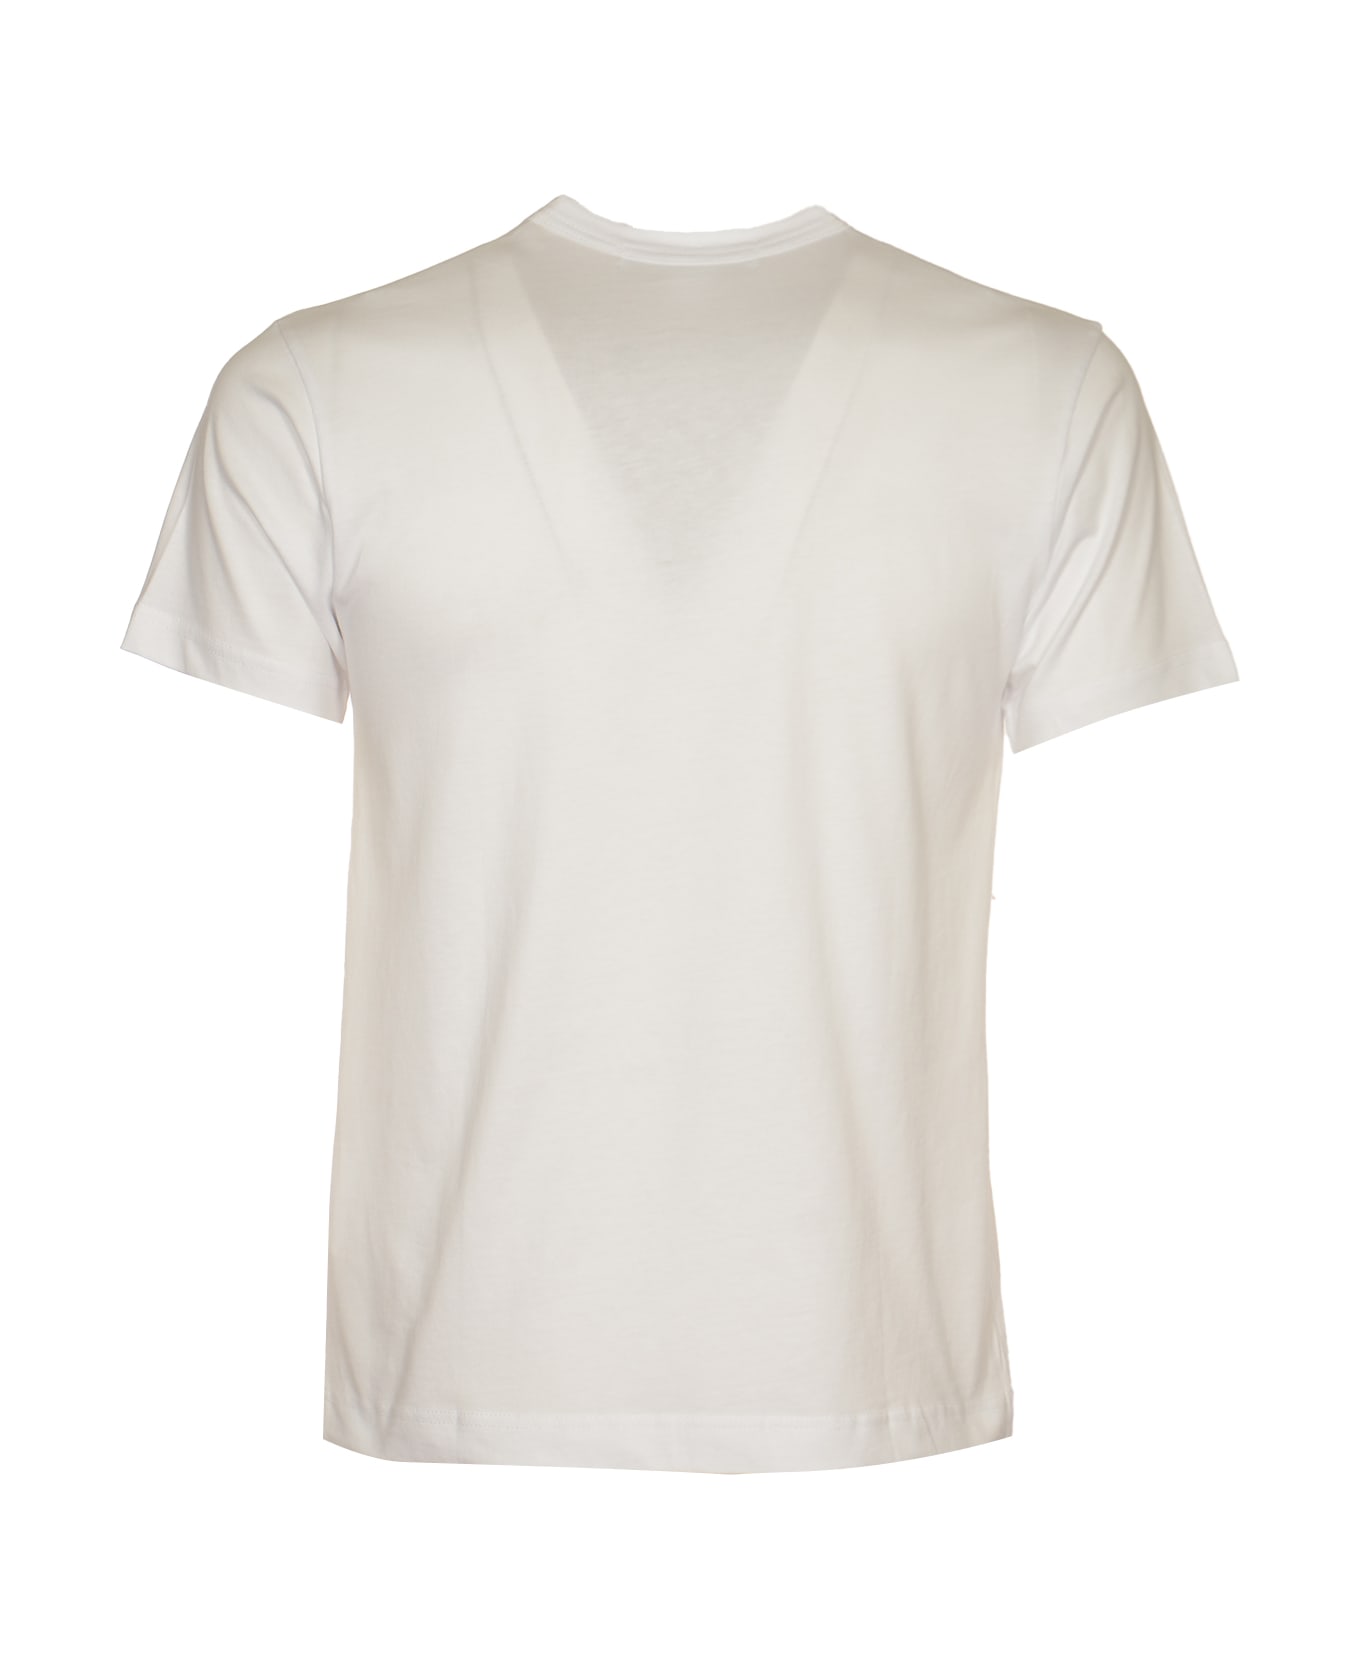 Comme des Garçons Madonna Print T-shirt - White